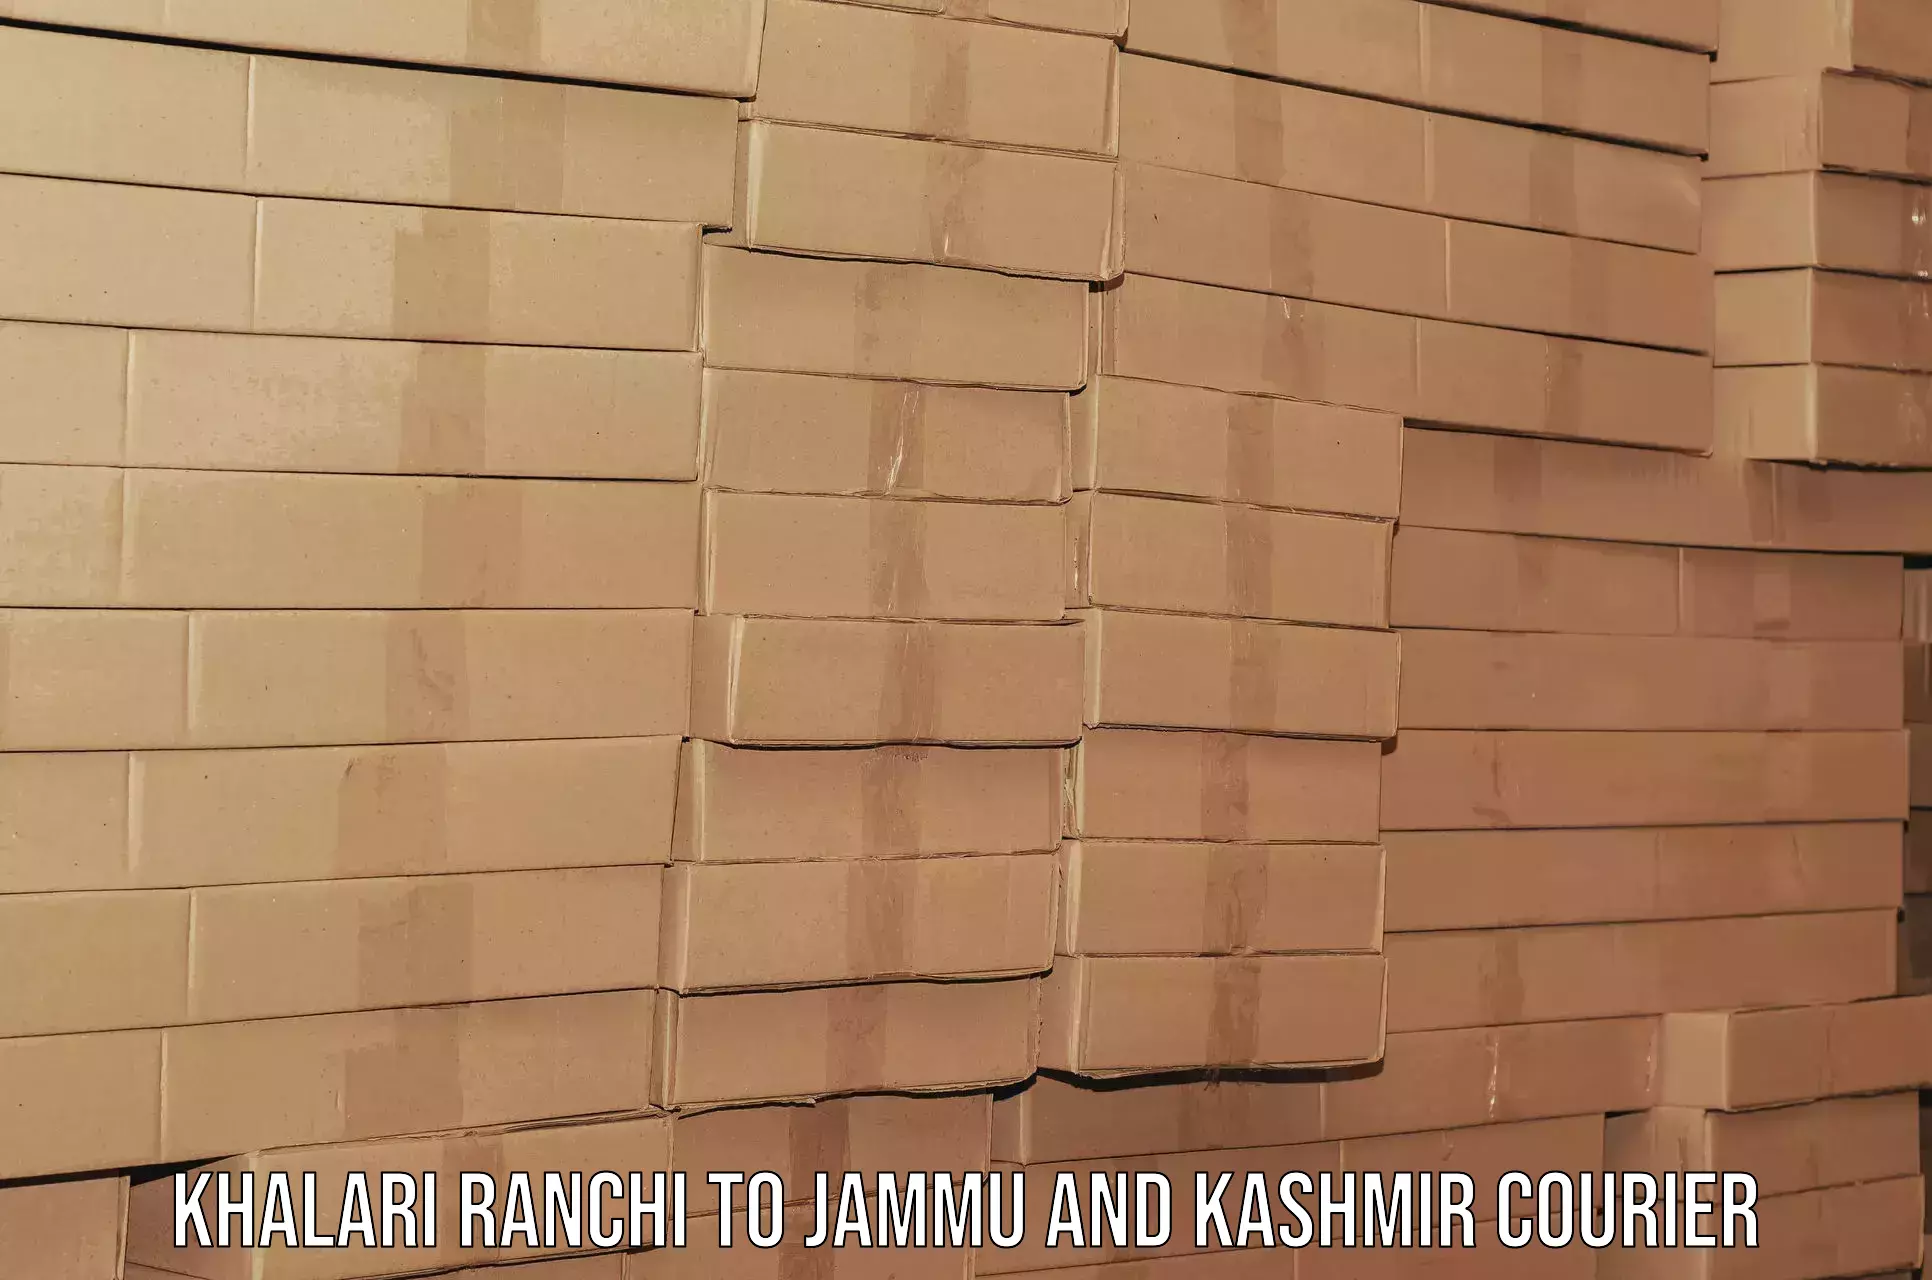 Home moving service Khalari Ranchi to Srinagar Kashmir